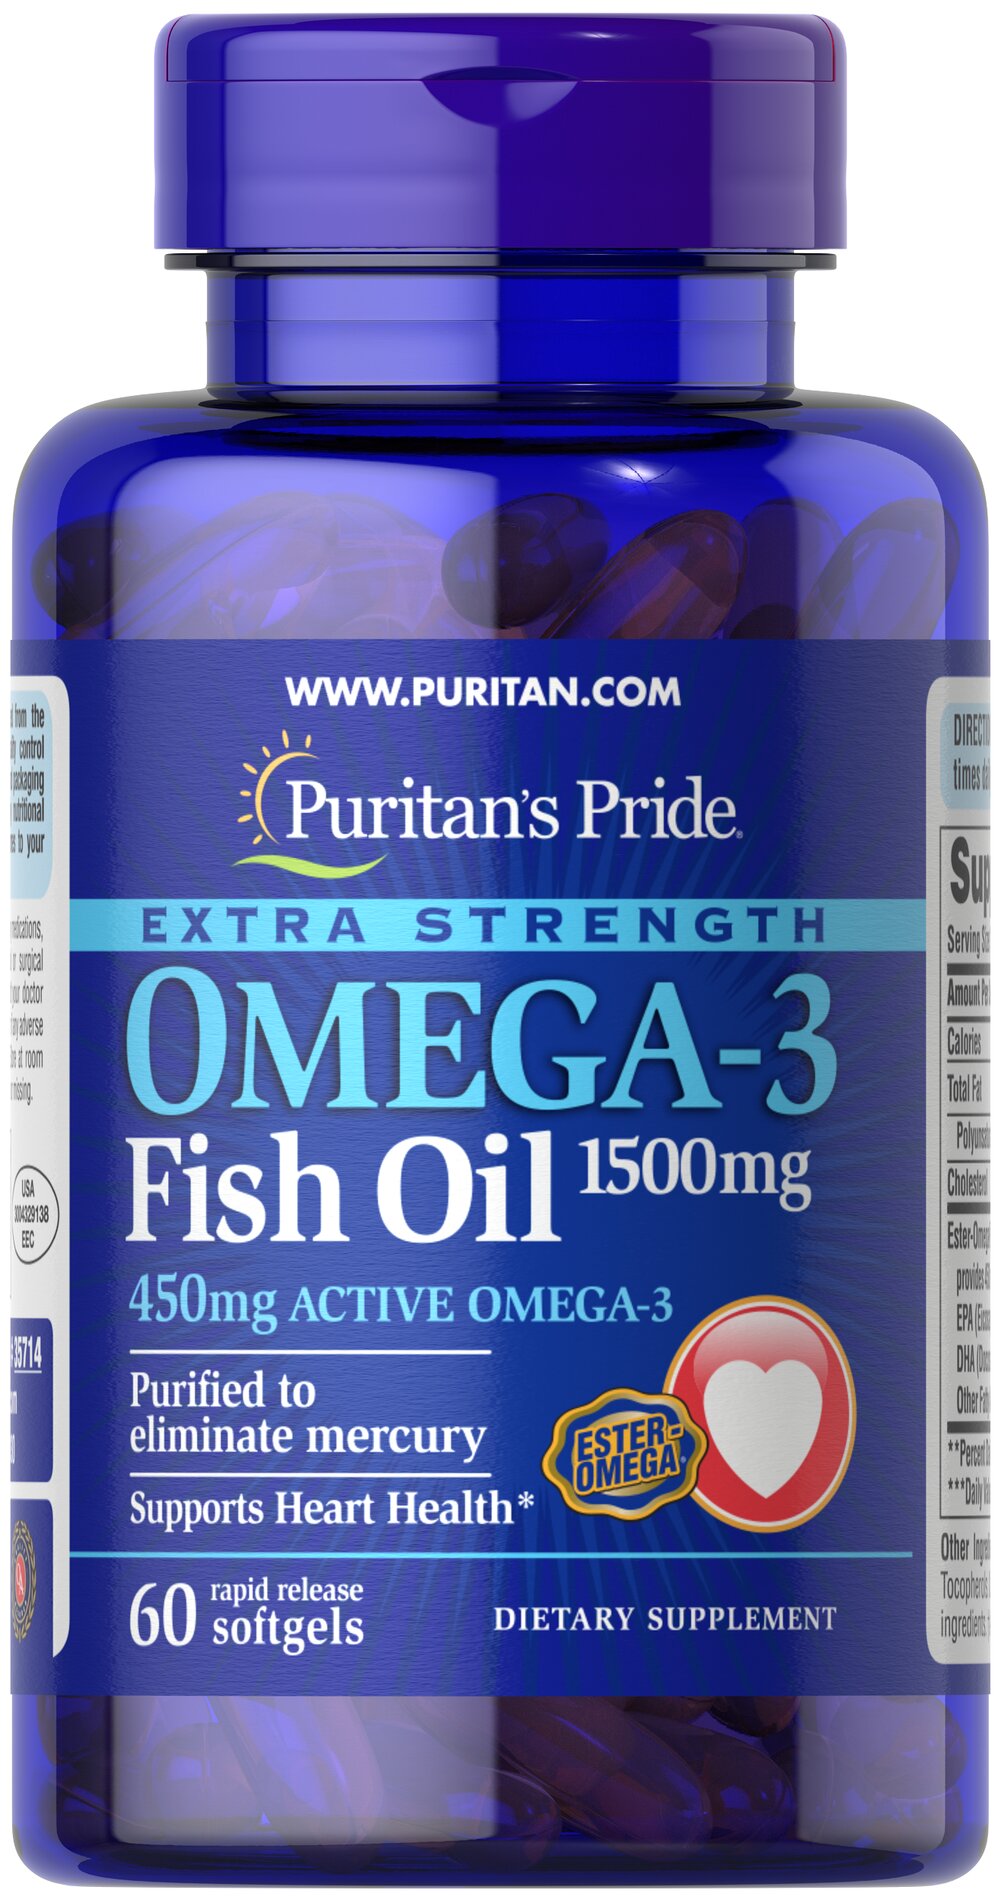 Omega-3 魚油 1500 MG（450MG 活性Omega-3）